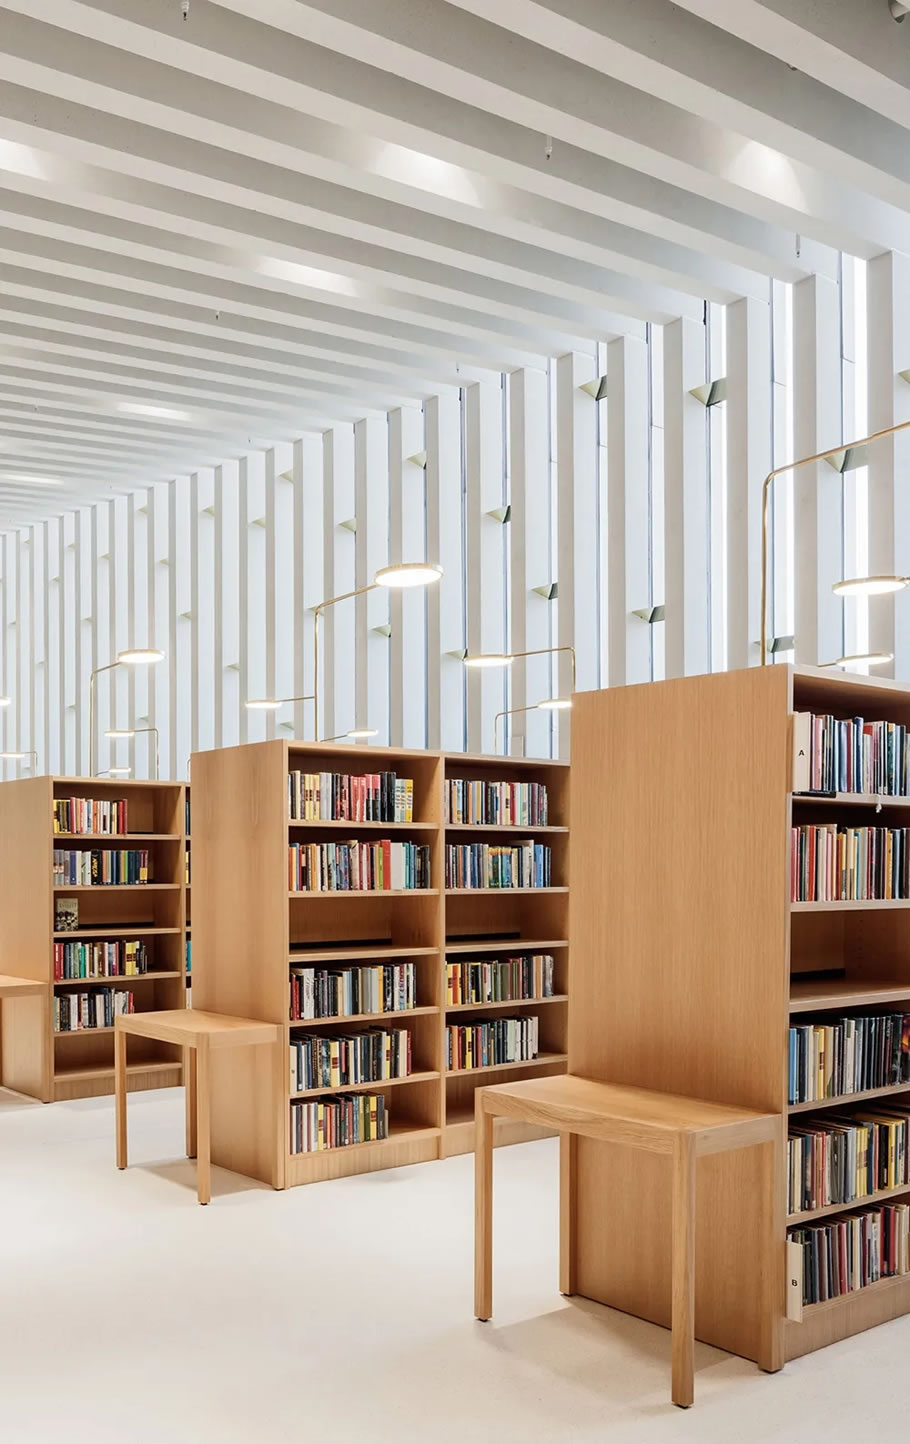 芬兰Kirkkonummi 图书馆改造